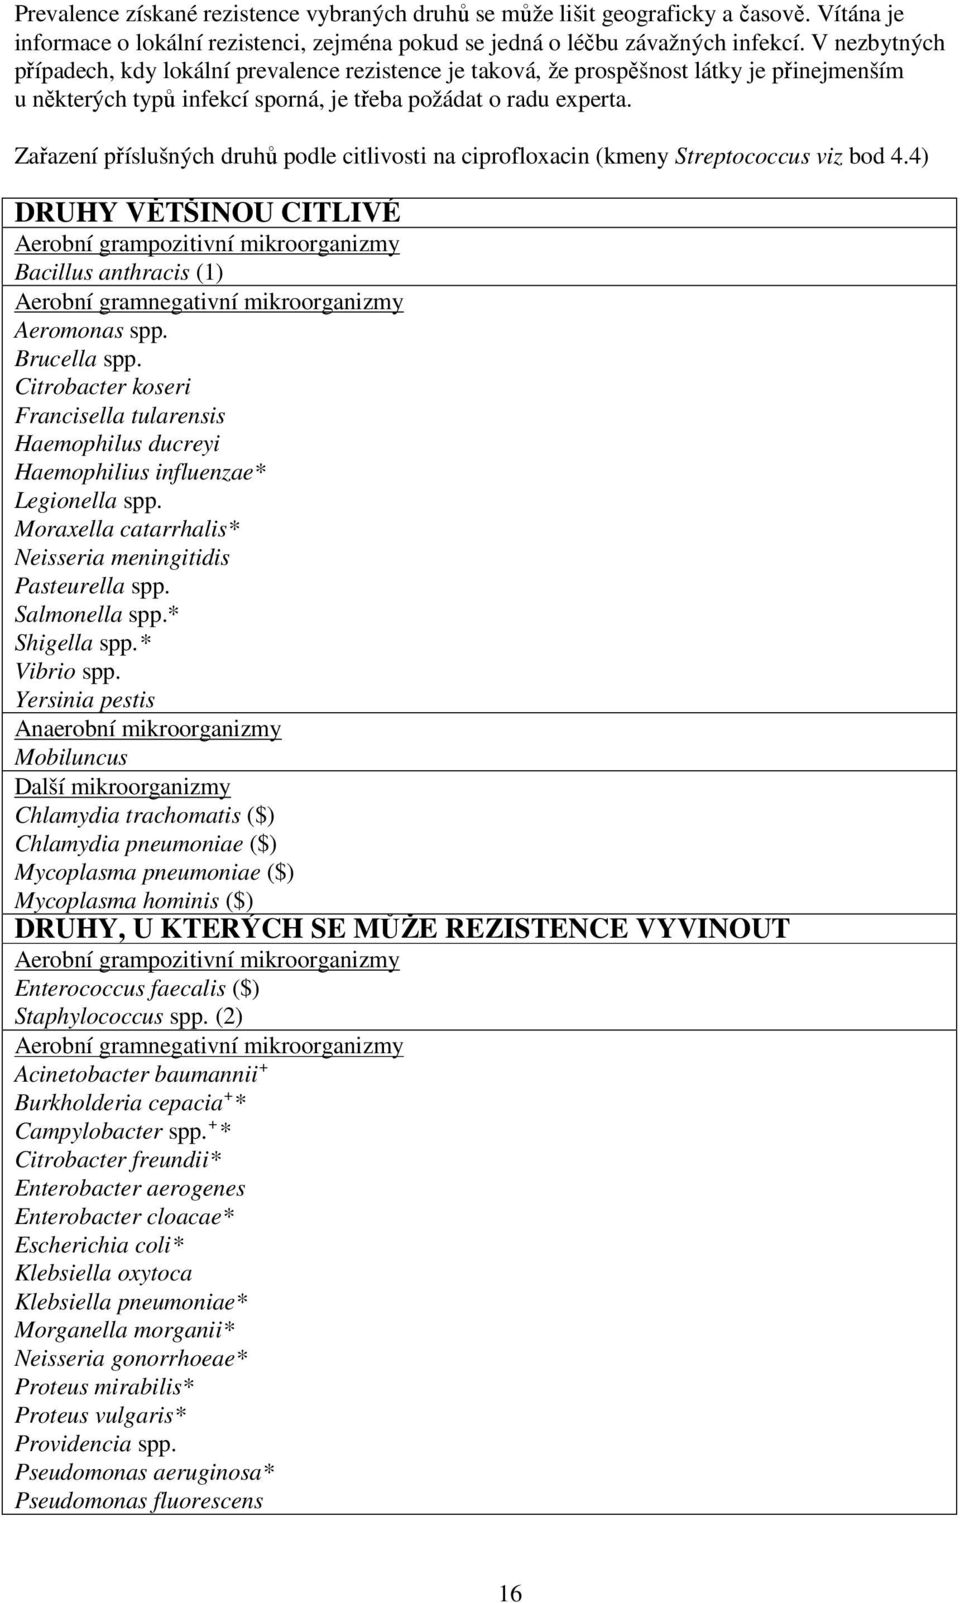 Zařazení příslušných druhů podle citlivosti na ciprofloxacin (kmeny Streptococcus viz bod 4.